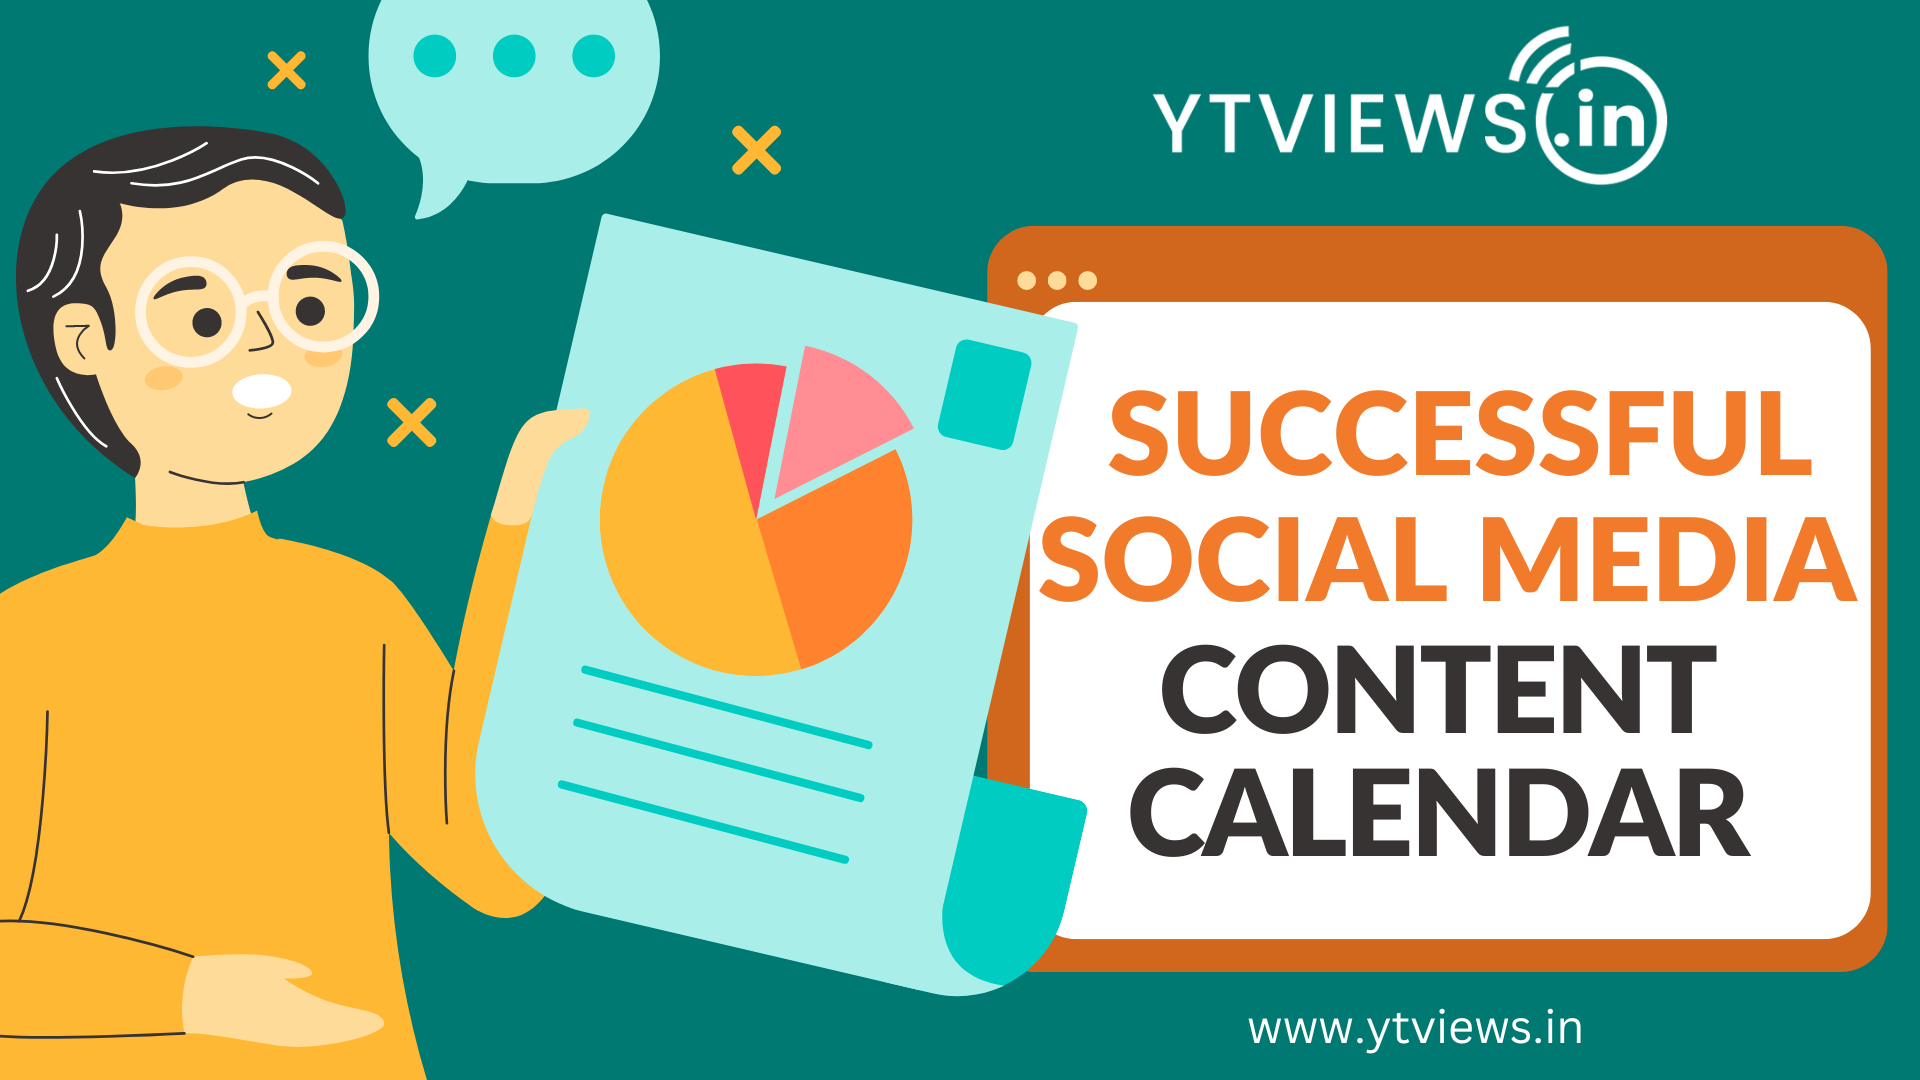 Creating a Successful Social Media Content Calendar